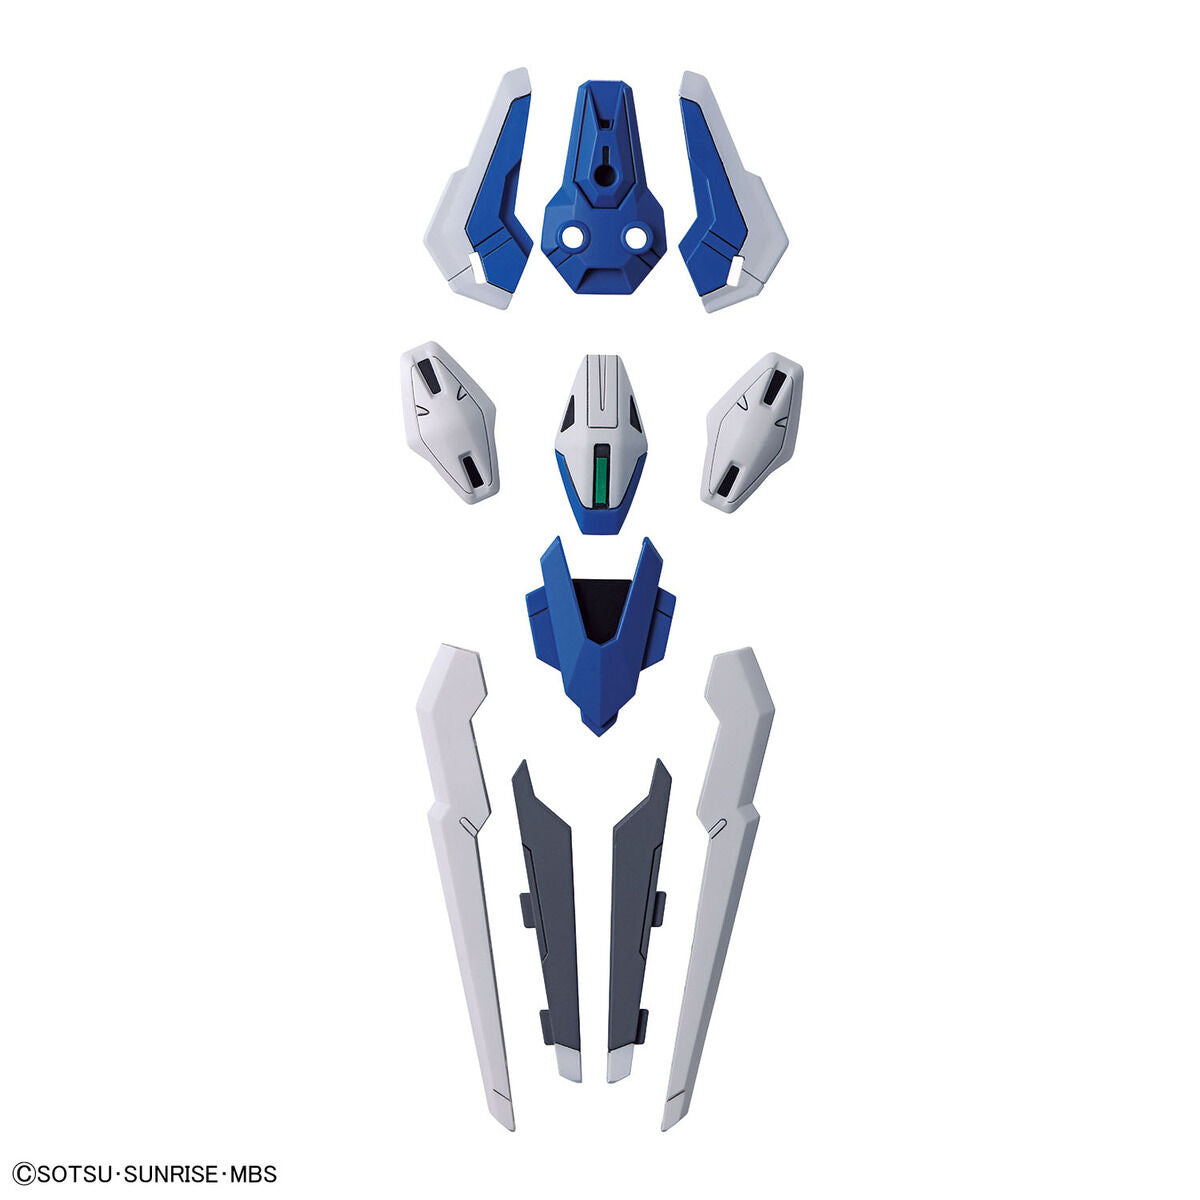 HG Gundam Aerial Umbau 1/144